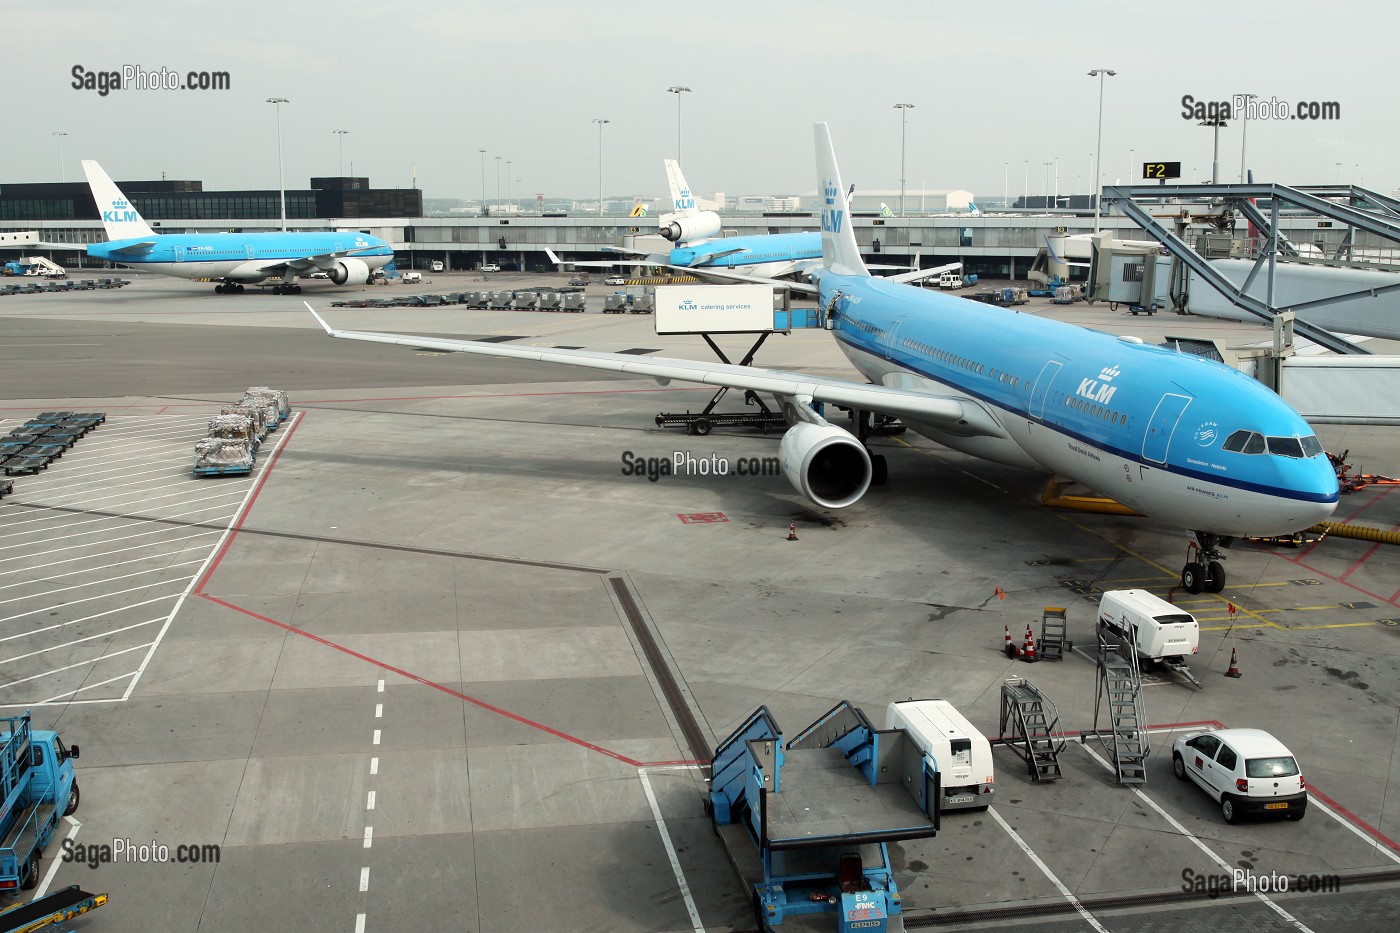 AVIONS DE LA COMPAGNIE AERIENNE AIR FRANCE-KLM A L'AEROPORT D'AMSTERDAM SCHIPOL, TRANSPORT AERIEN, AMSTERDAM, PAYS-BAS 